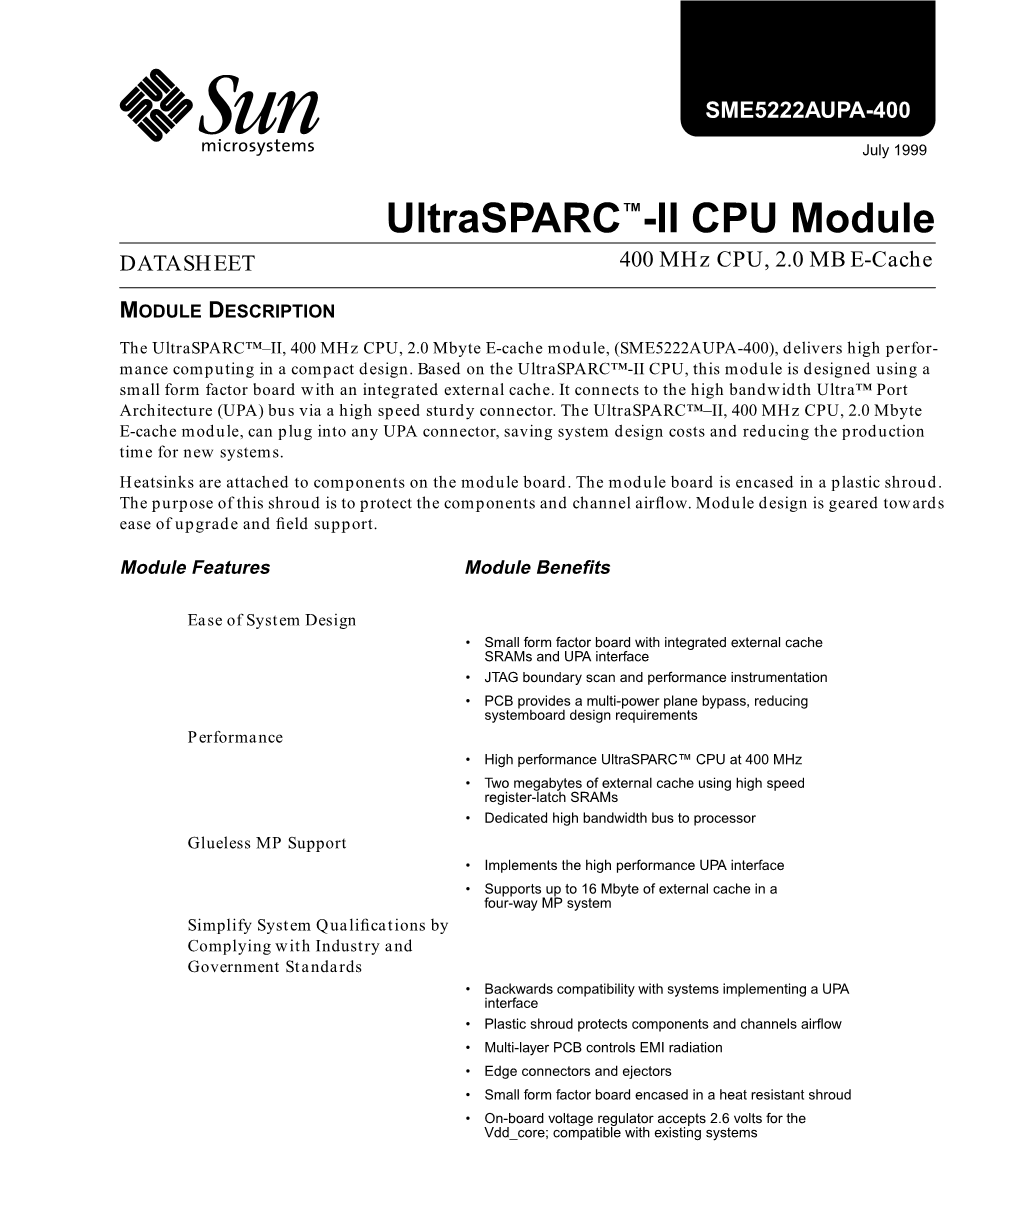 Ultrasparc II 400 Mhz CPU, 2.0 MB E-Cache